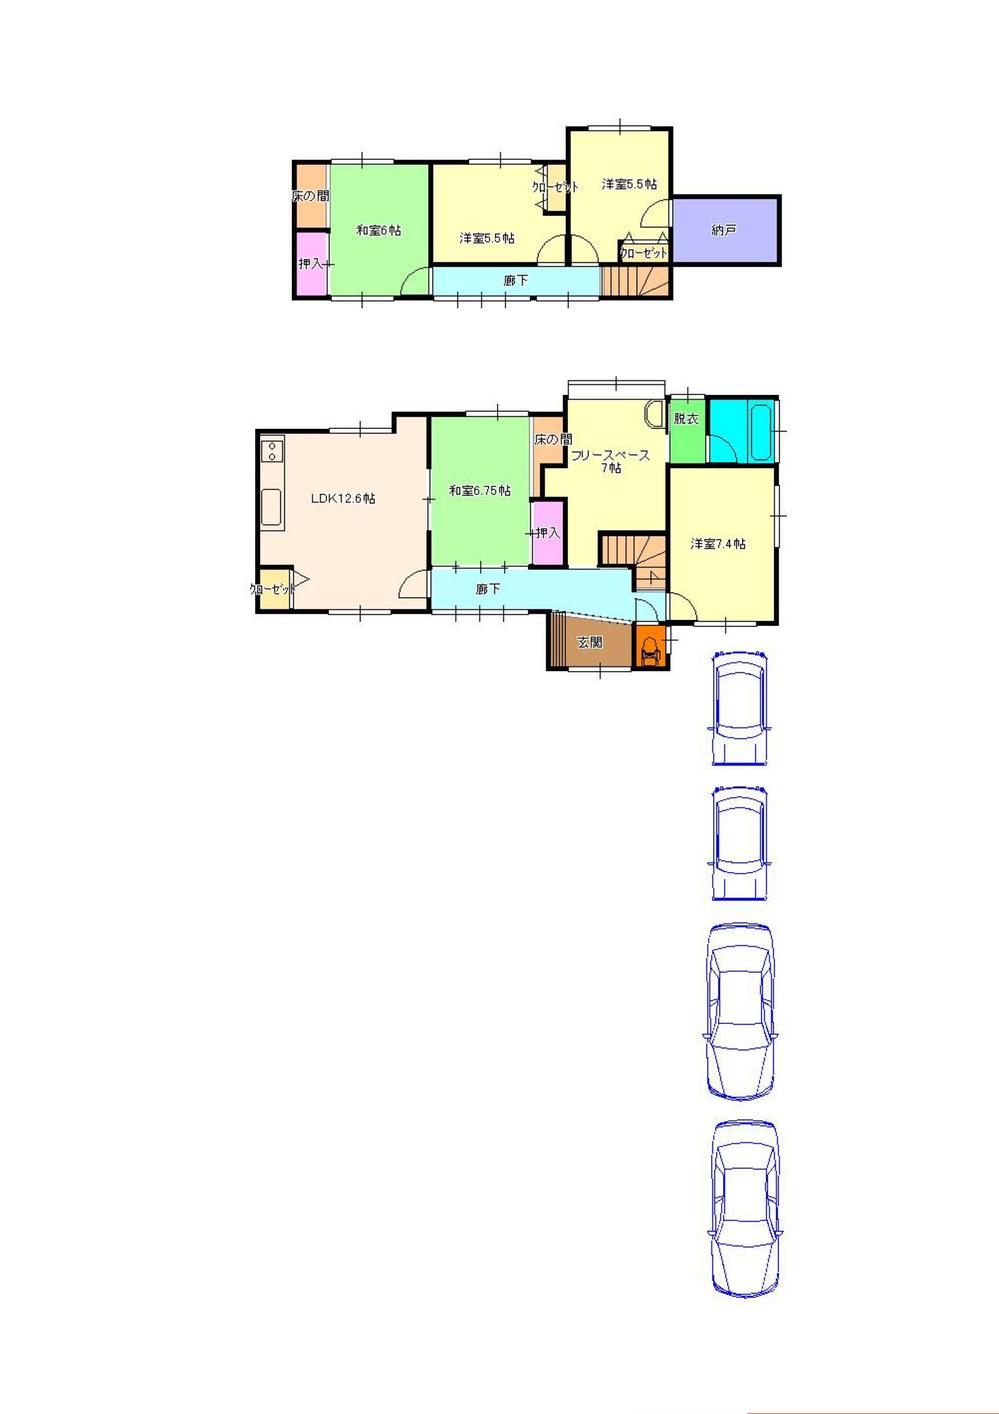 Floor plan. 15,980,000 yen, 5LDK + S (storeroom), Land area 214.63 sq m , Building area 119.72 sq m